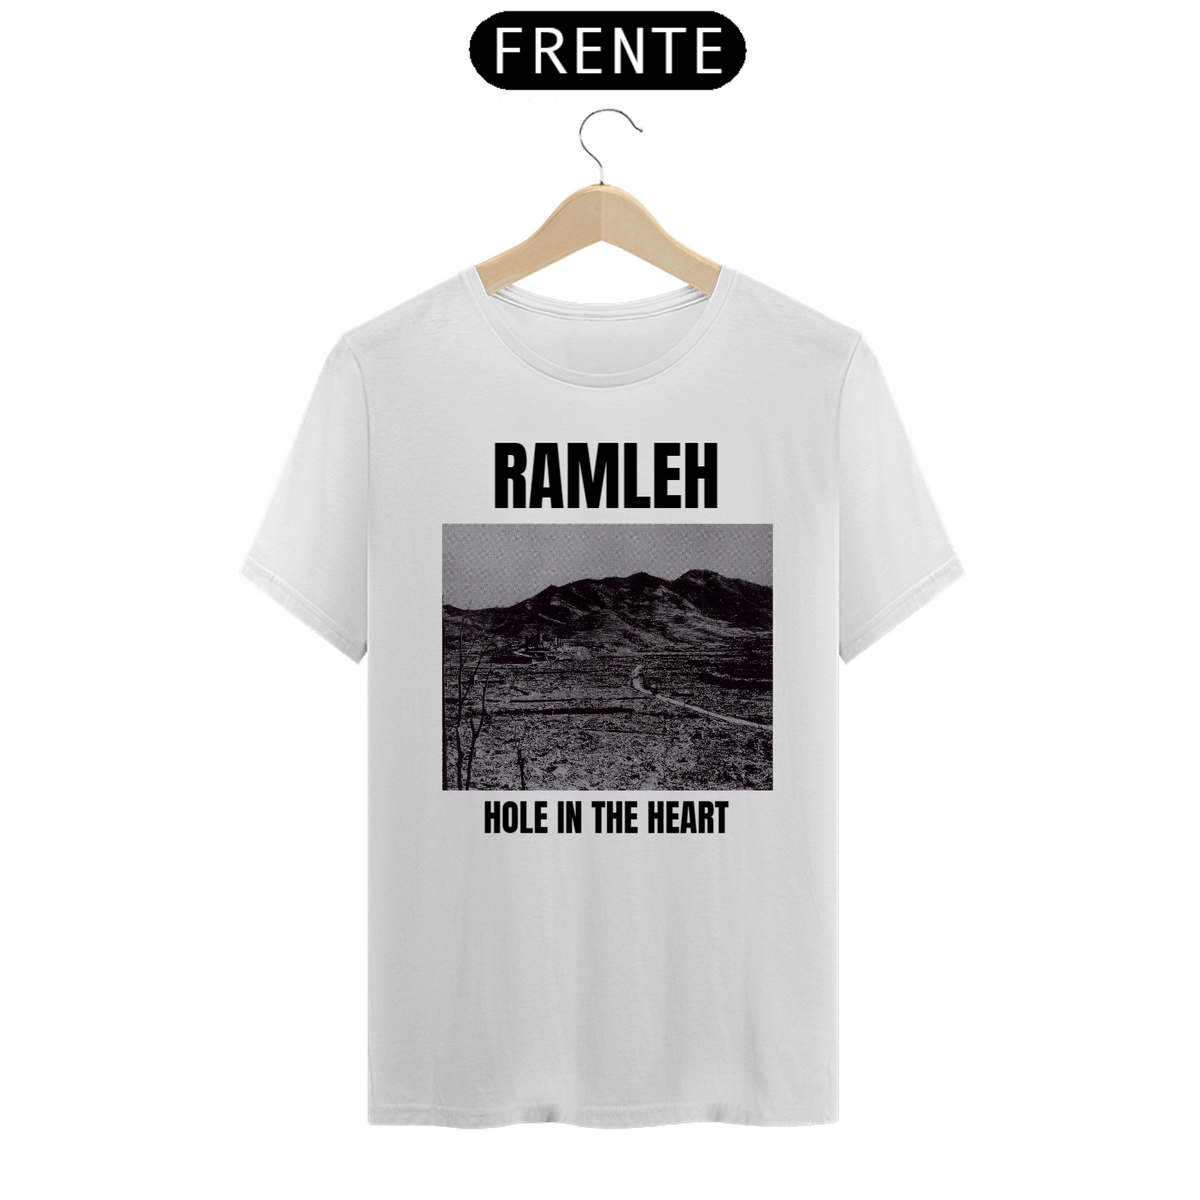 Nome do produto: Ramleh